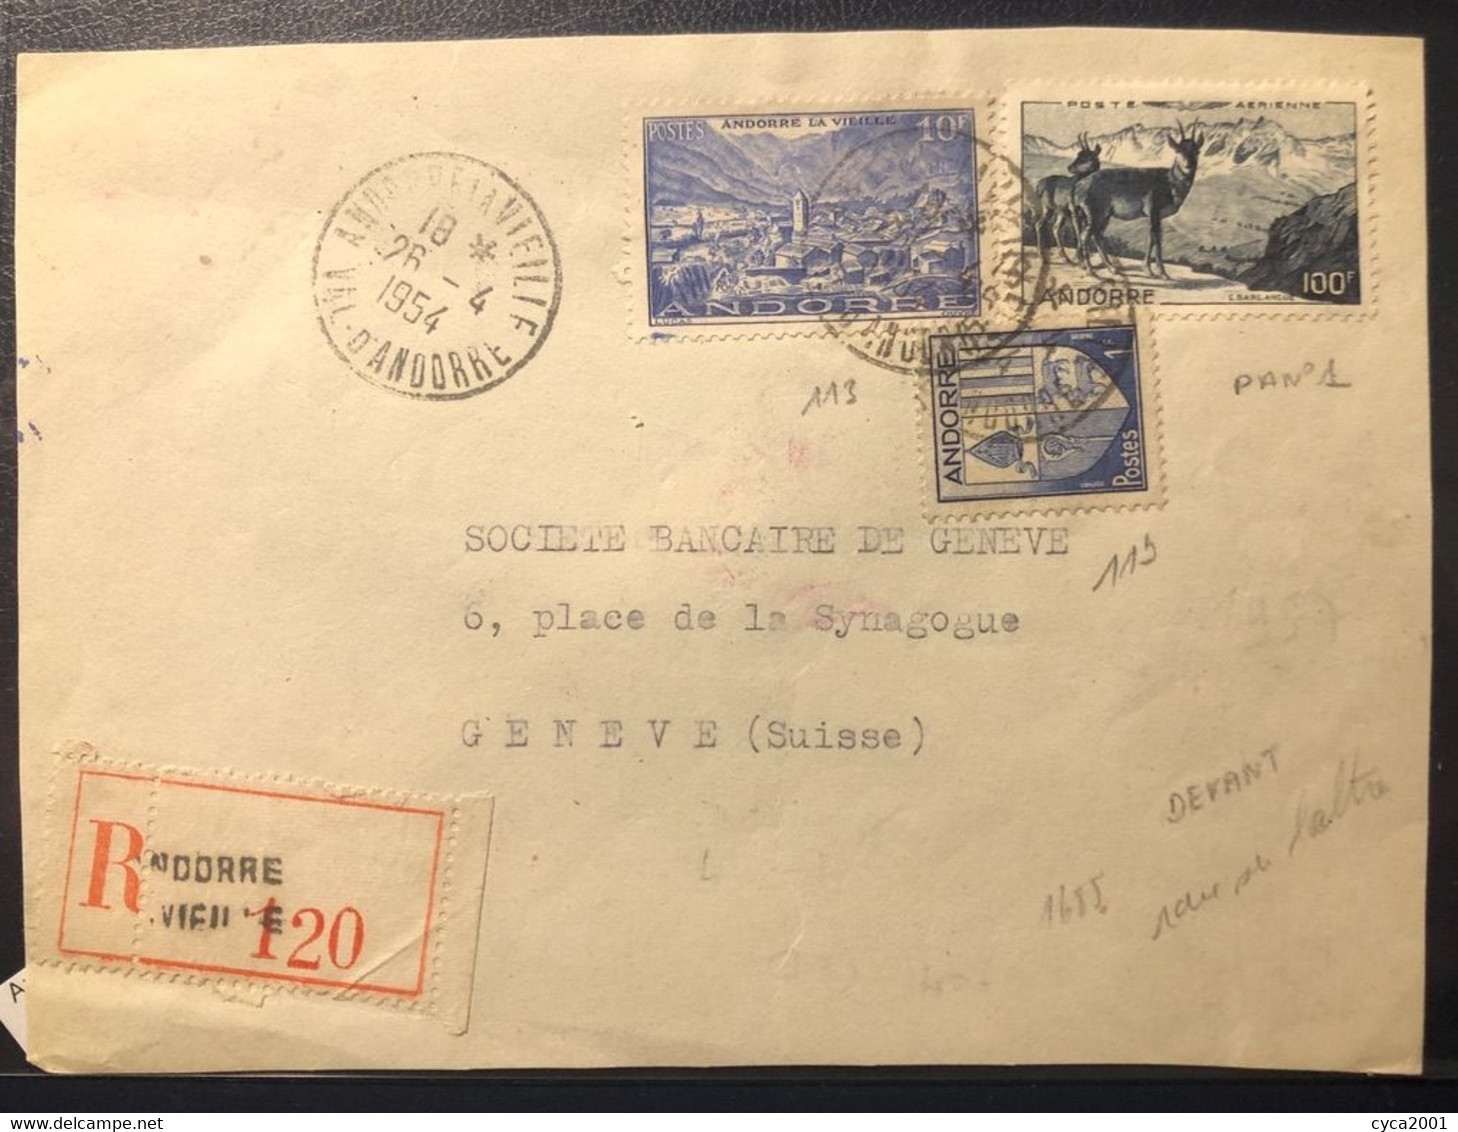 Andorre N°113+119+P.AN°1 OBL Andorre La Vielle (1954) Sur Lettre Recommandée Pour La Suisse, Affranchissement Rare.TB - Briefe U. Dokumente